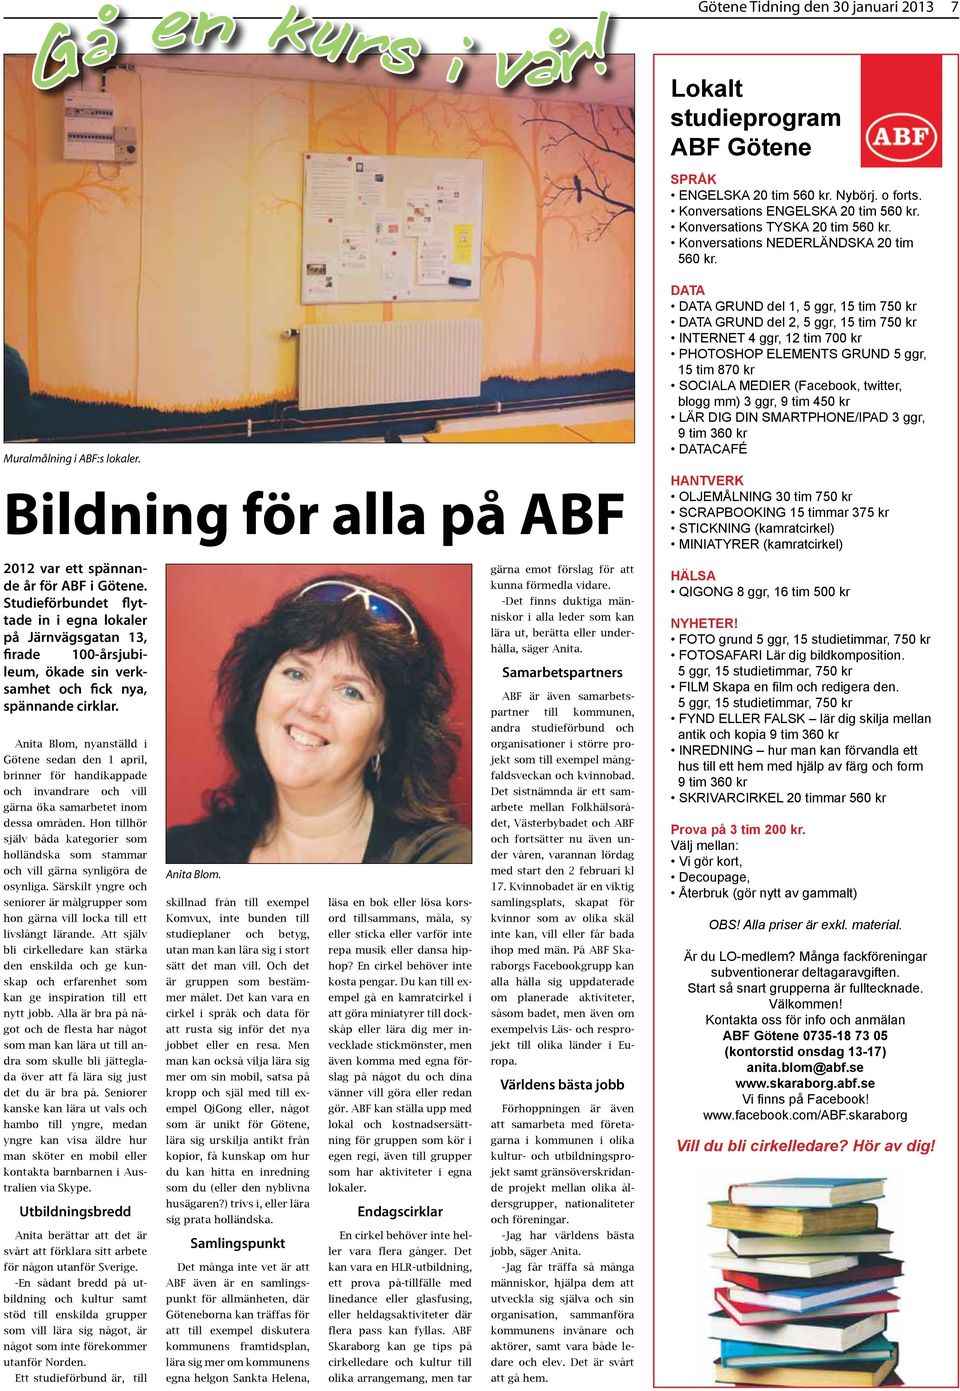 Anita Blom, nyanställd i Götene sedan den 1 april, brinner för handikappade och invandrare och vill gärna öka samarbetet inom dessa områden.